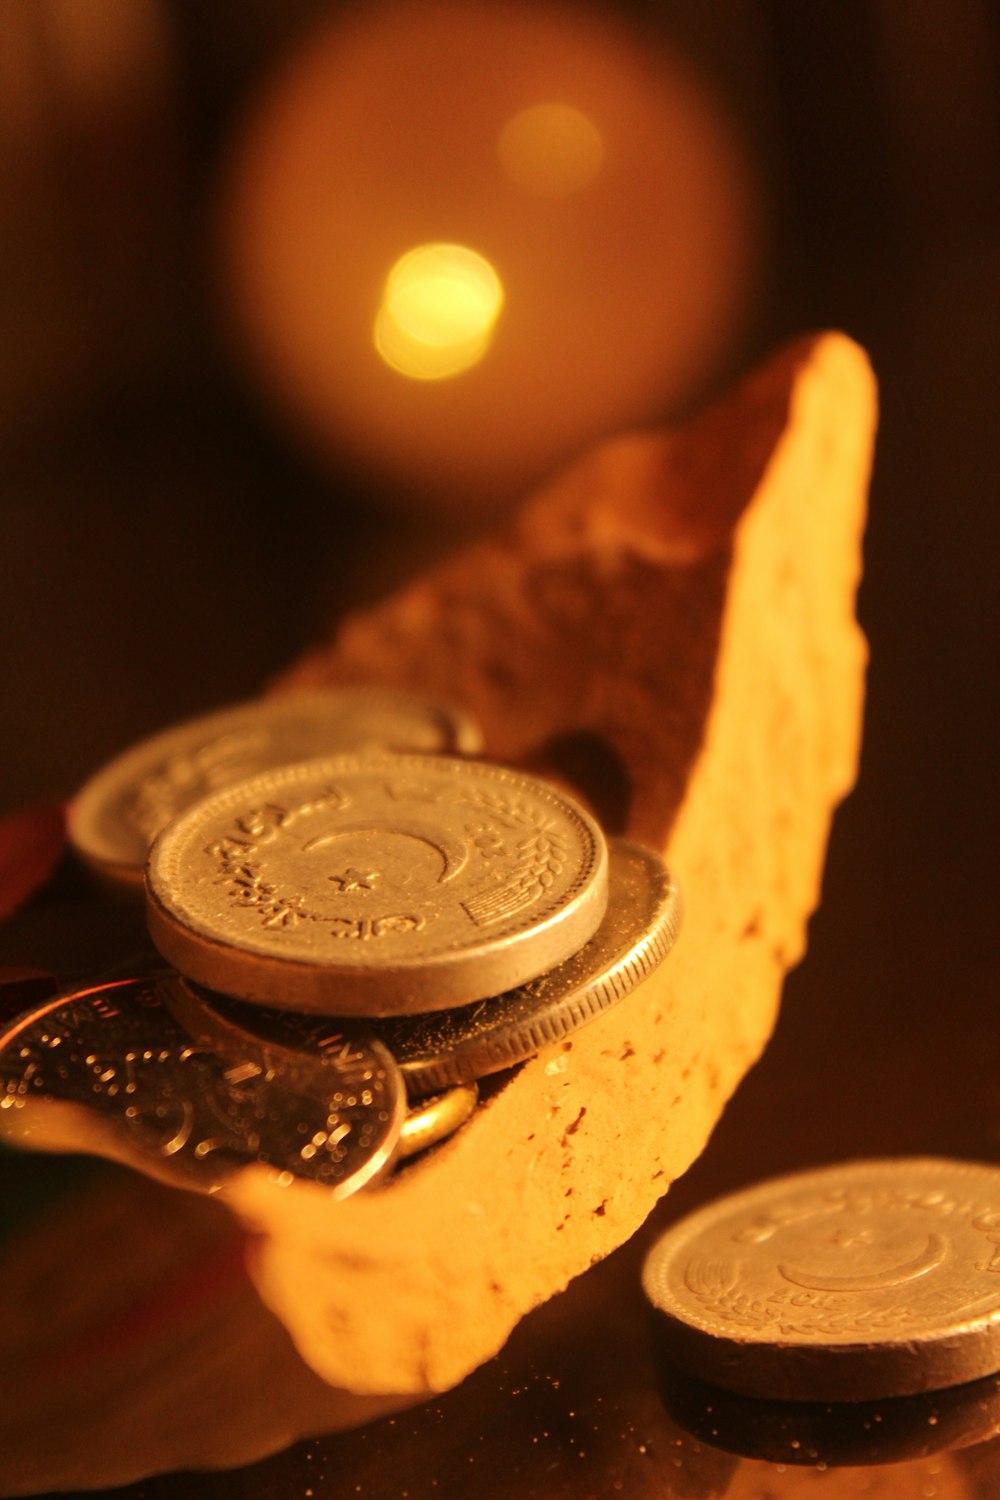 Pièce ronde en argent sur surface en bois brun